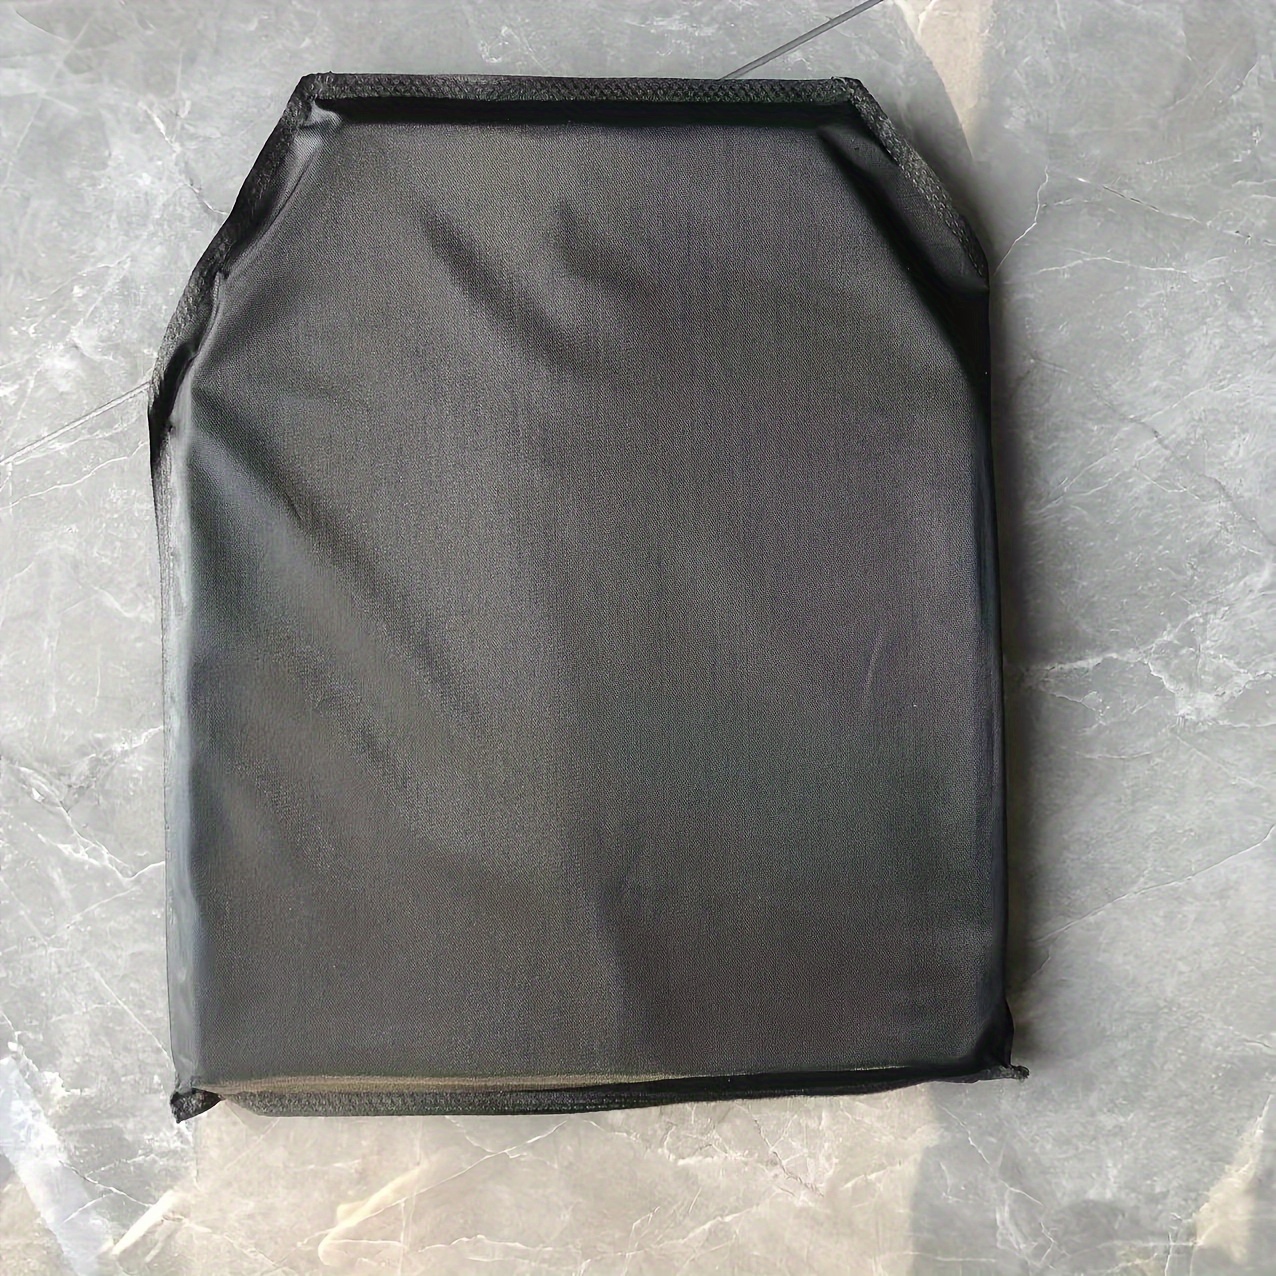 2Pcs Vest EVA Pads Breathable Cushion Pad Outdoor Vest Chest